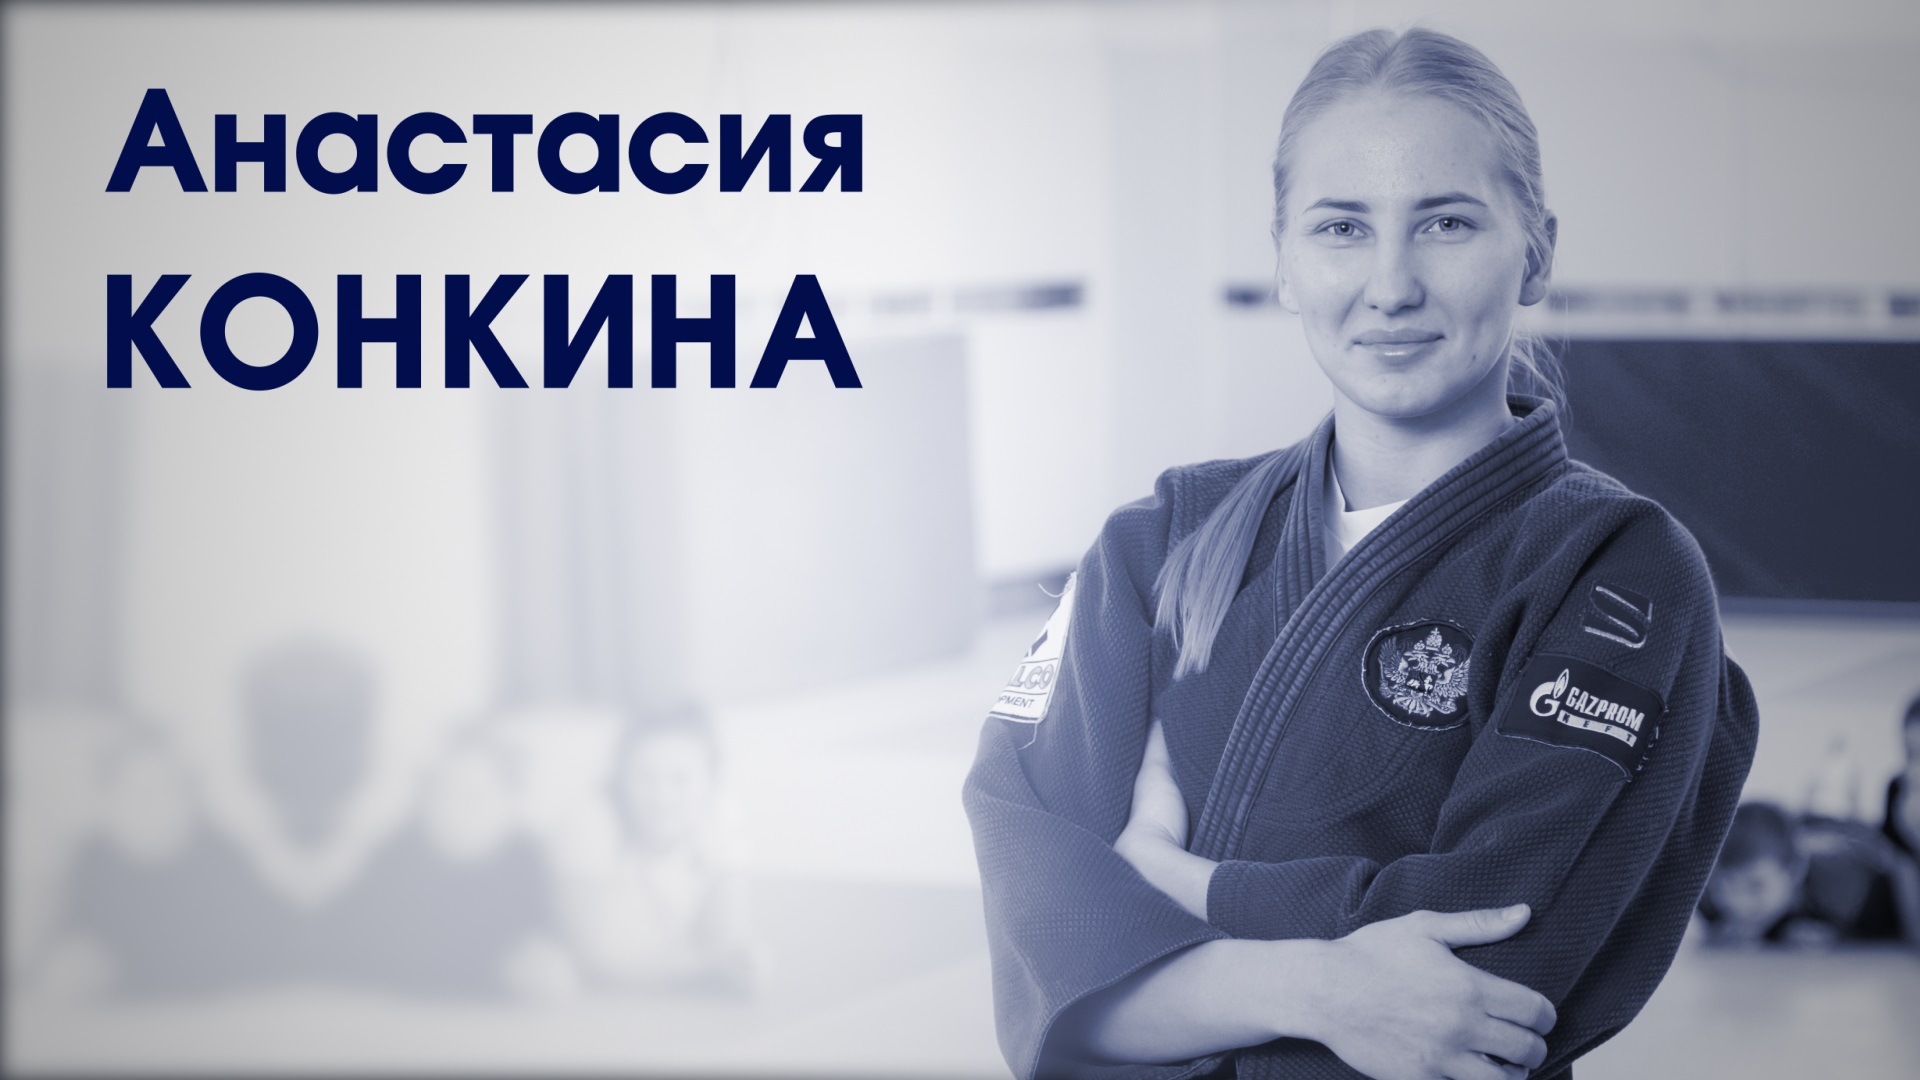 Анастасия Конкина. Мастер спорта международного класса по дзюдо.